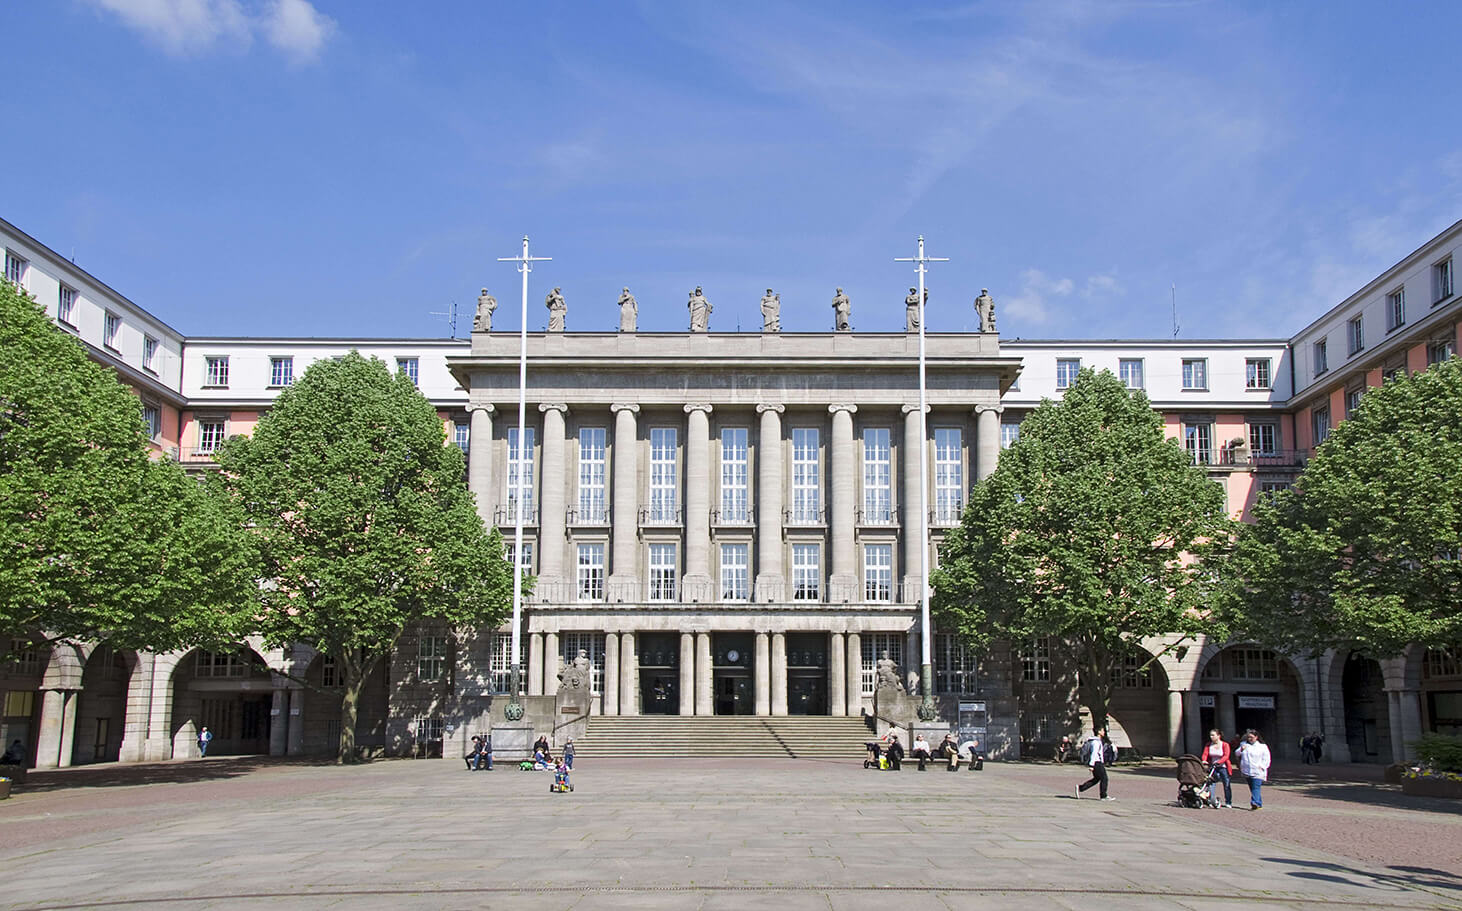 Rathaus als Verwaltungssitz der Stadt Wuppertal